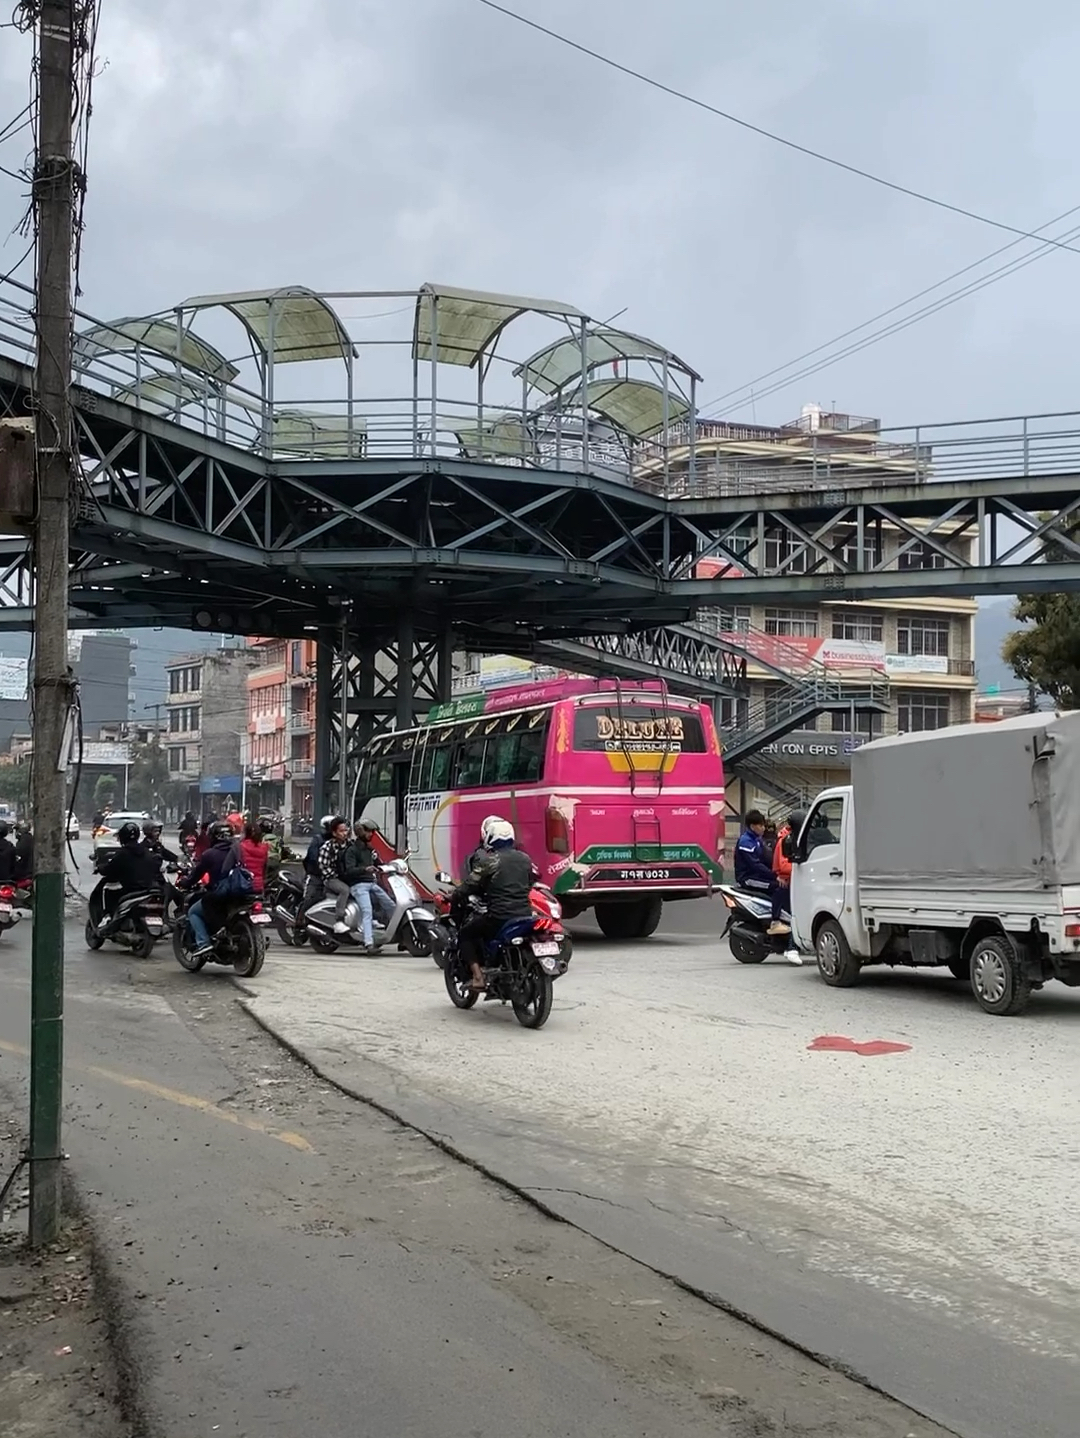 尼泊尔过街天桥用料讲究